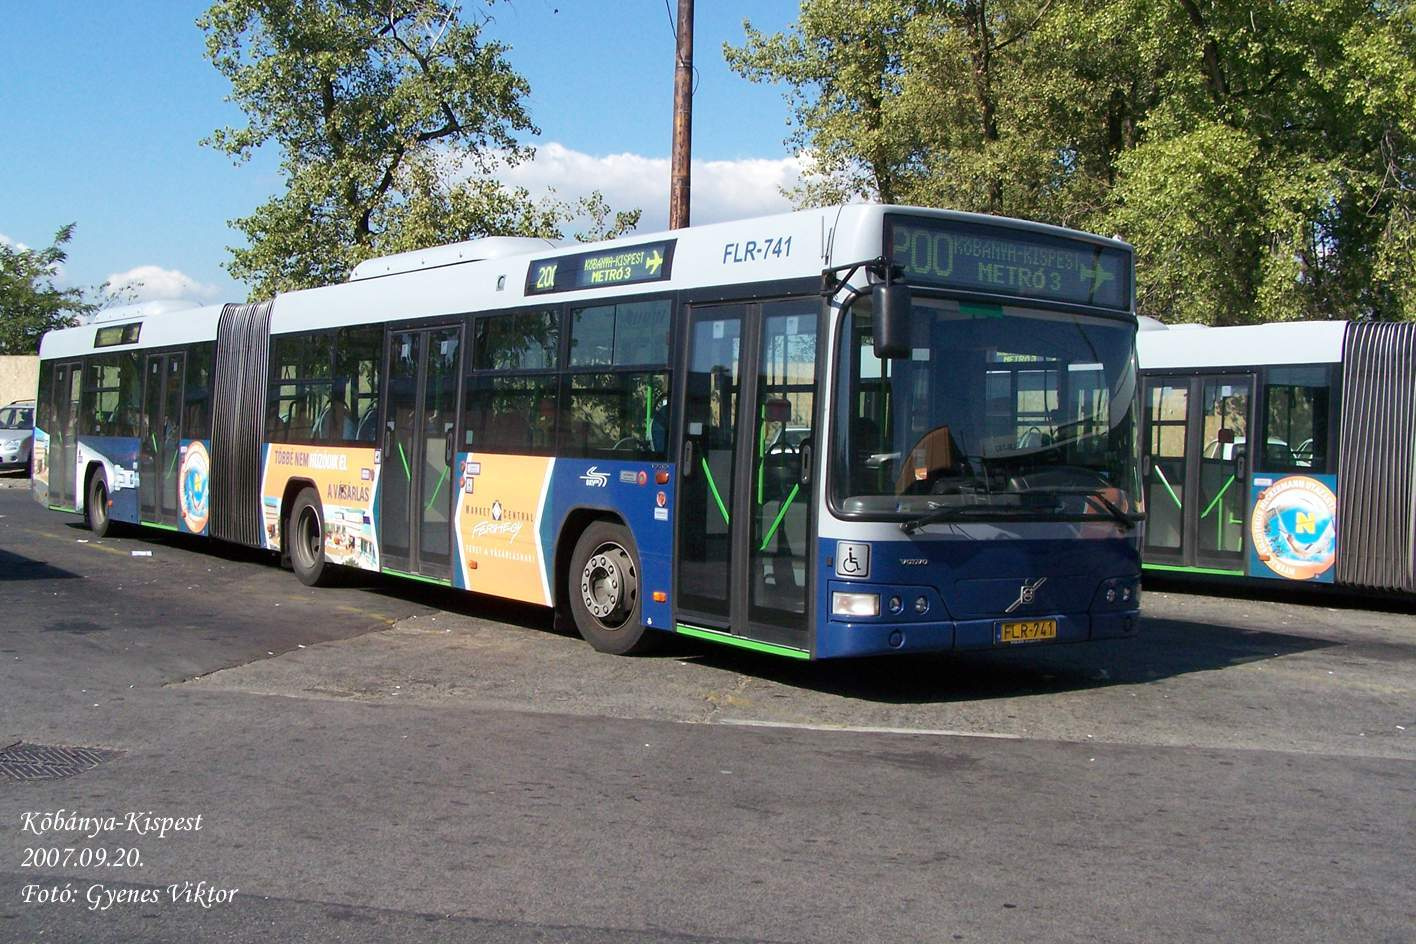 Busz FLR-741